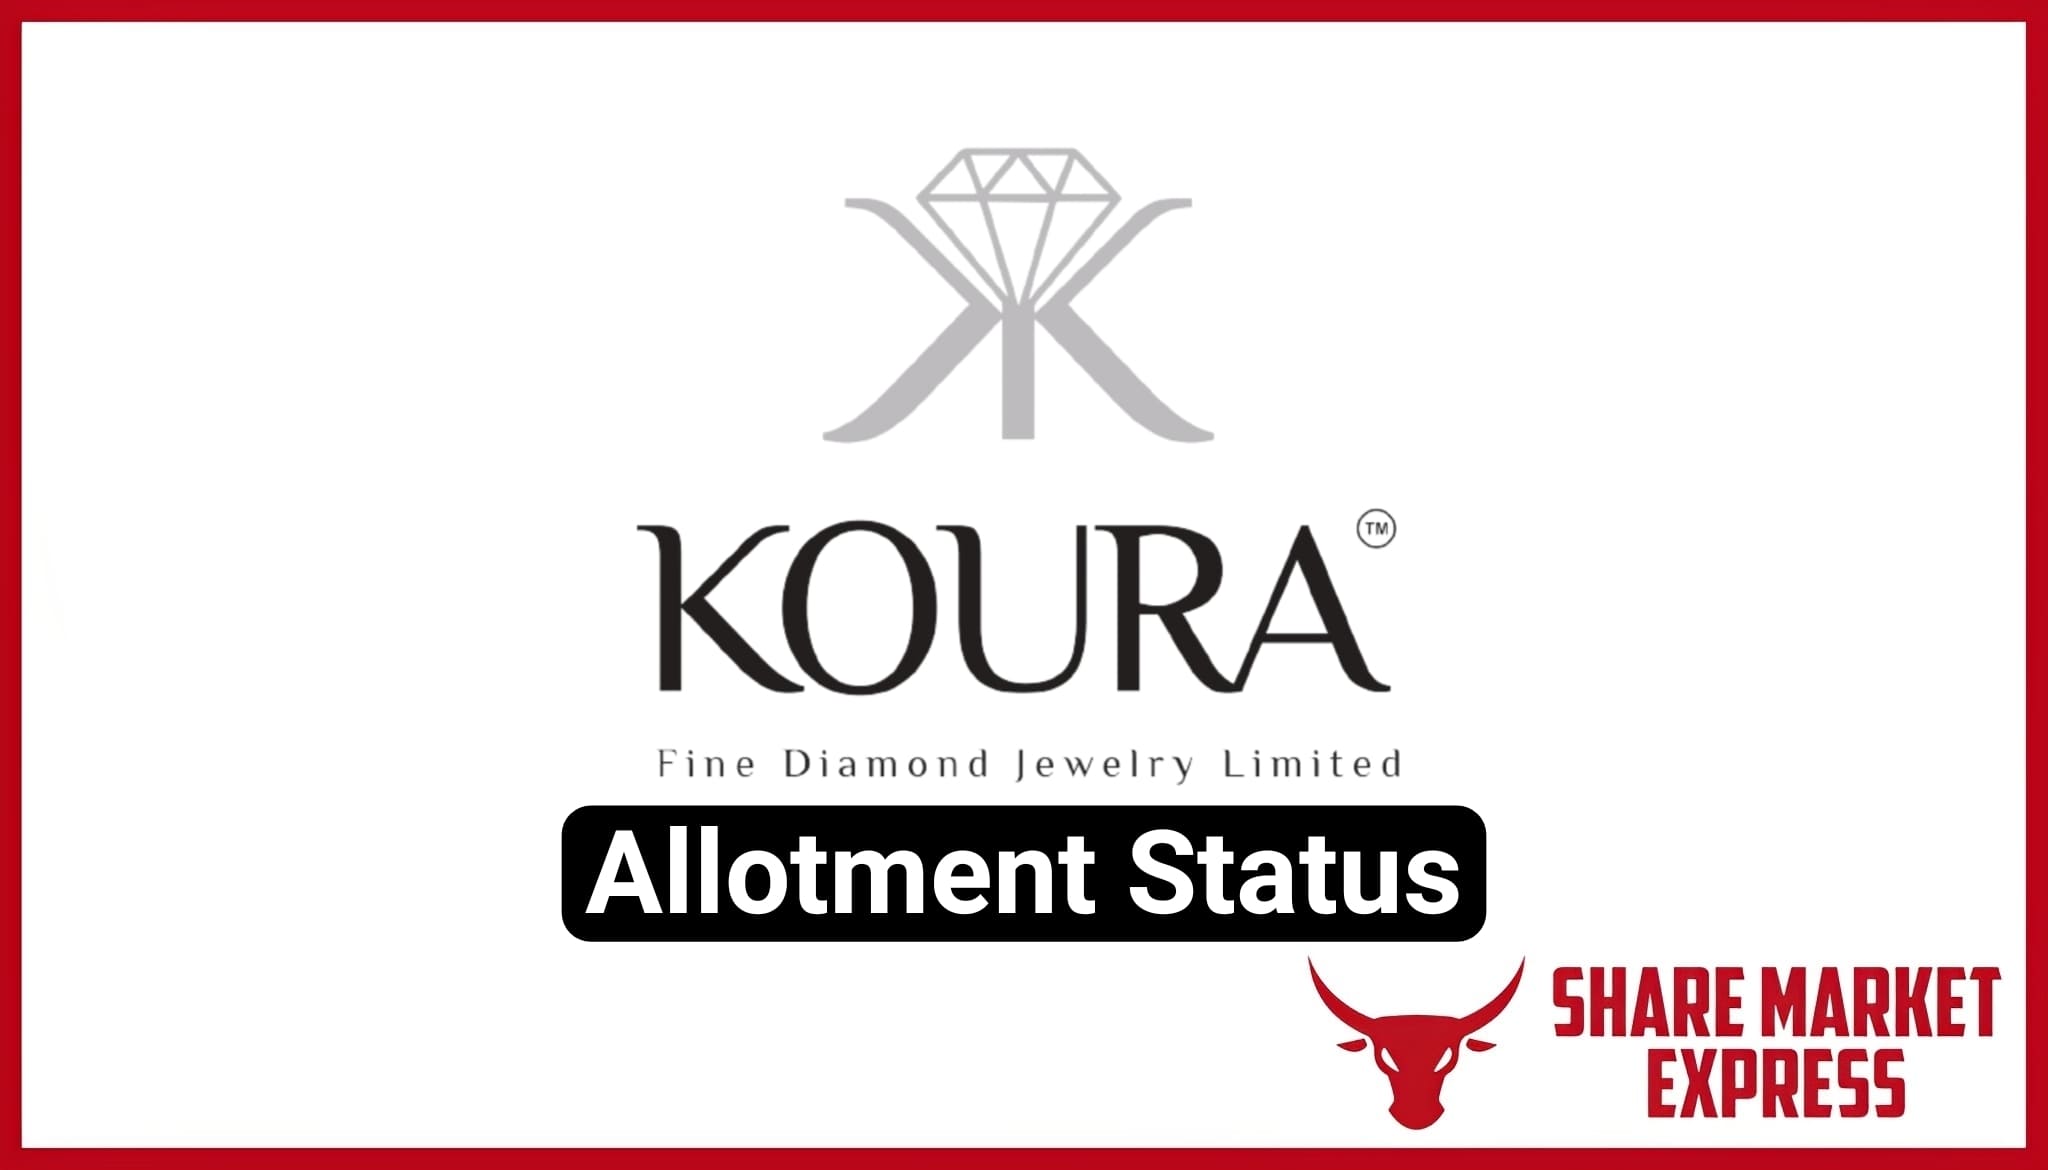 Koura Fine Diamond IPO Allotment Status Koura Fine Diamond Jewelry Limited IPO Allotment Status Koura Fine Diamond Jewelry IPO Allotment Status